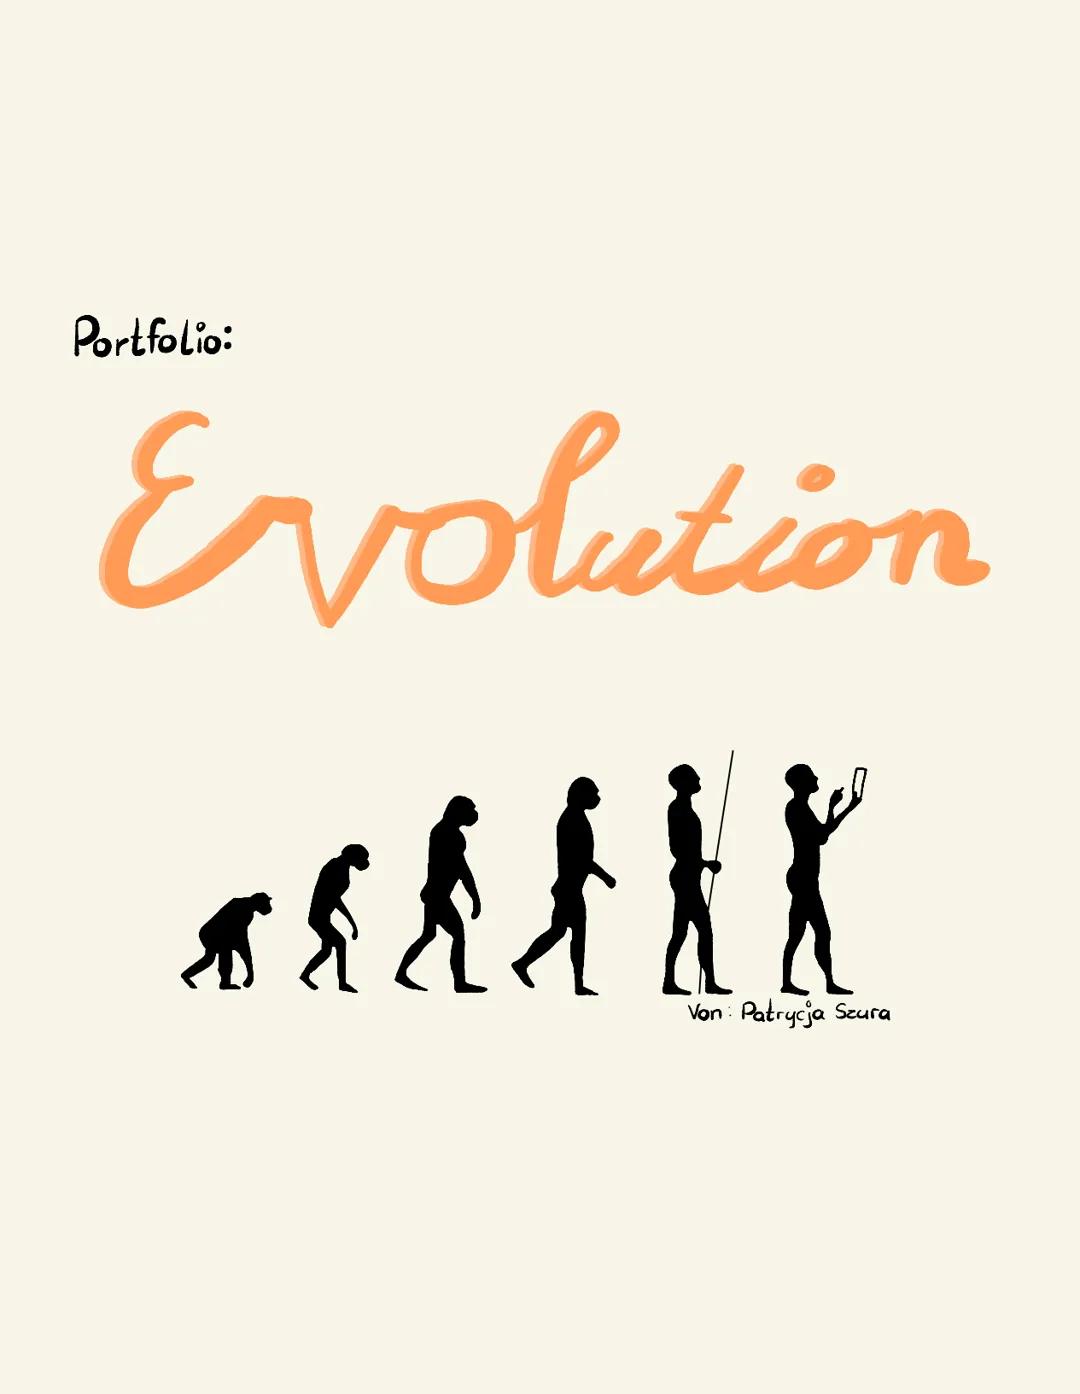 Portfolio:
Evolution
$8
发
Von: Patrycja Szura 18 Brainstorming
Tiere
Entwicklung
Menschen
Bakterien
Evolution
Biologische
Homologe Entwicklu